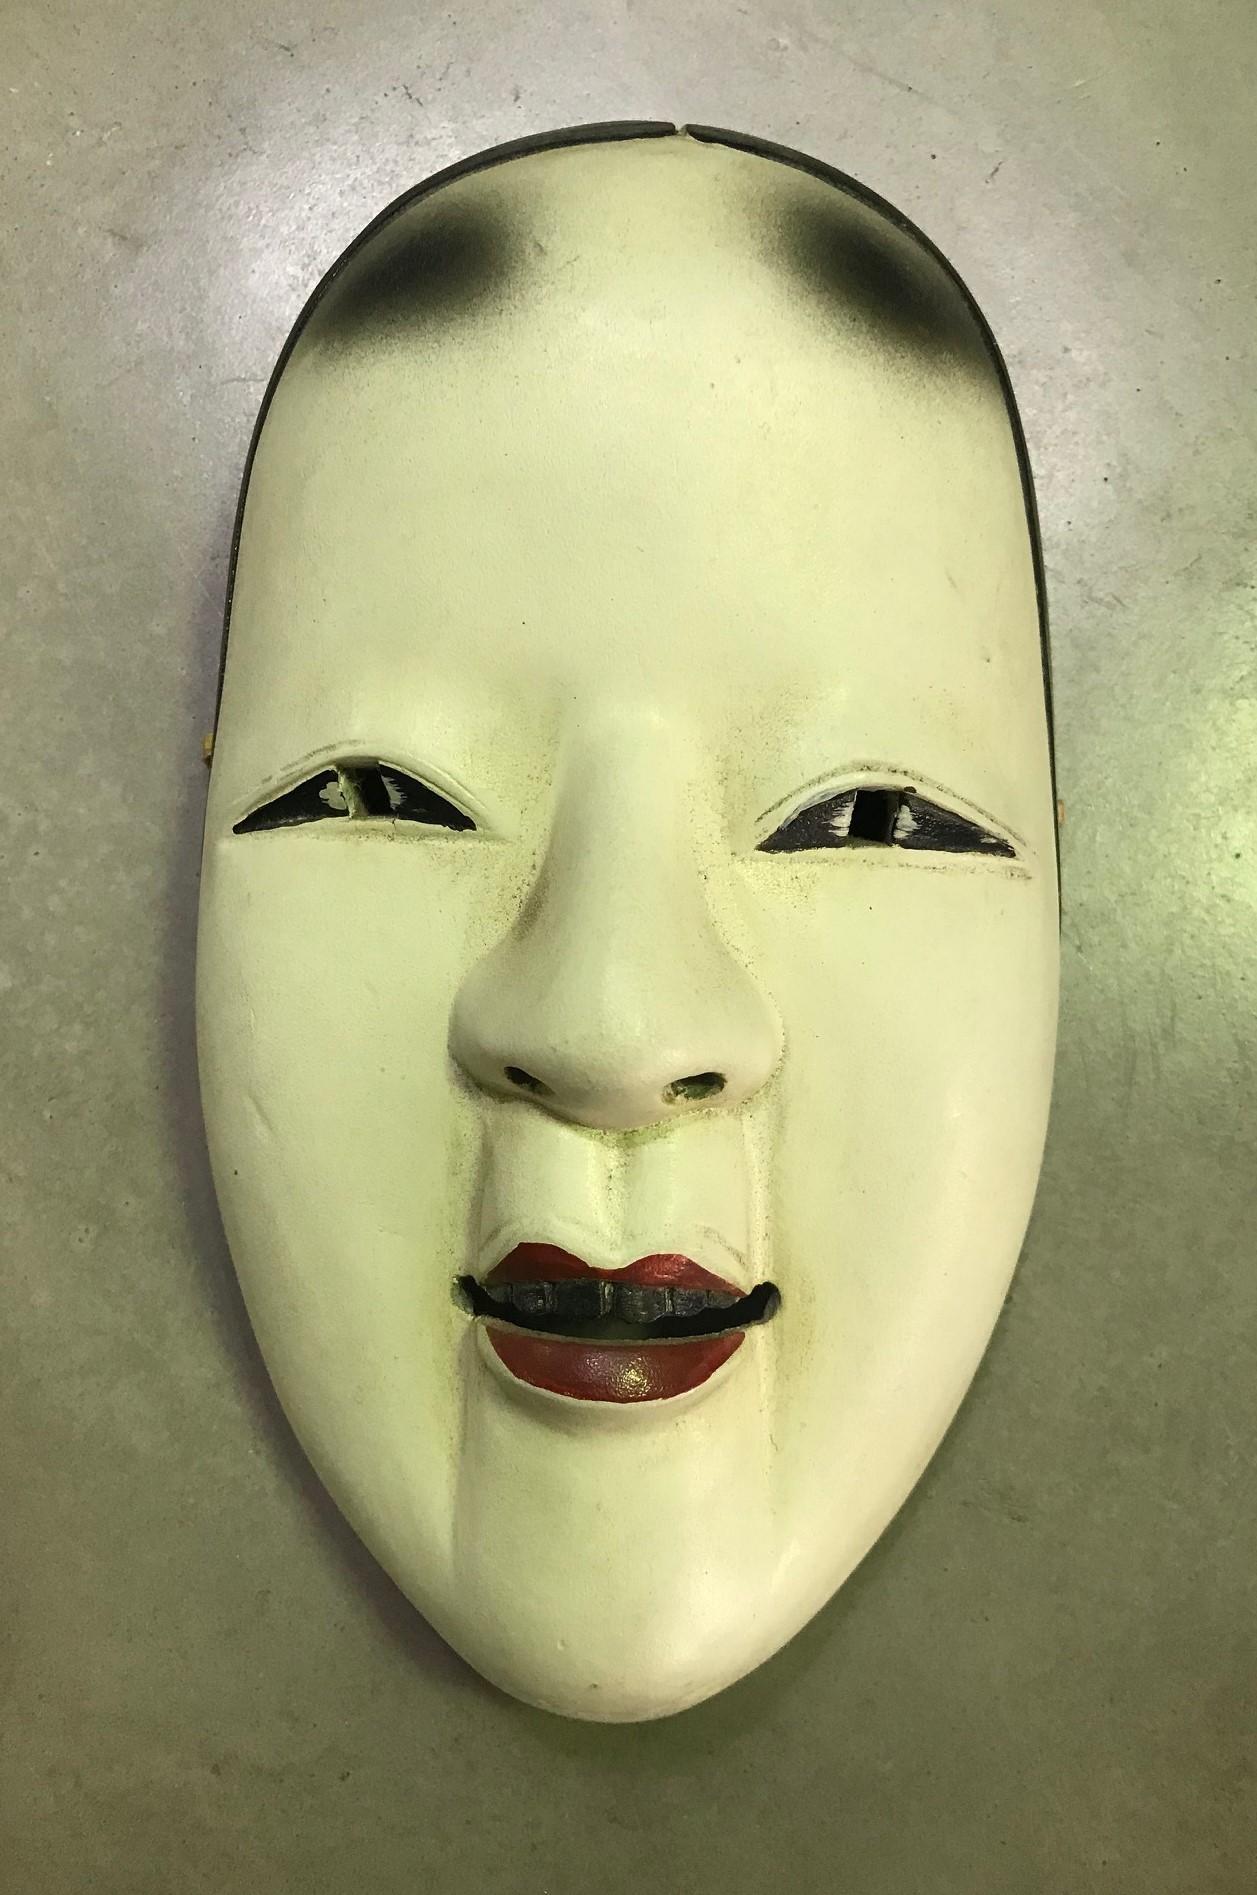 Un masque magnifique, merveilleusement réalisé, séduisant, conçu pour le théâtre nô japonais.

Ce masque est fabriqué à la main et sculpté dans du bois naturel.

Ko-omote se traduit par 